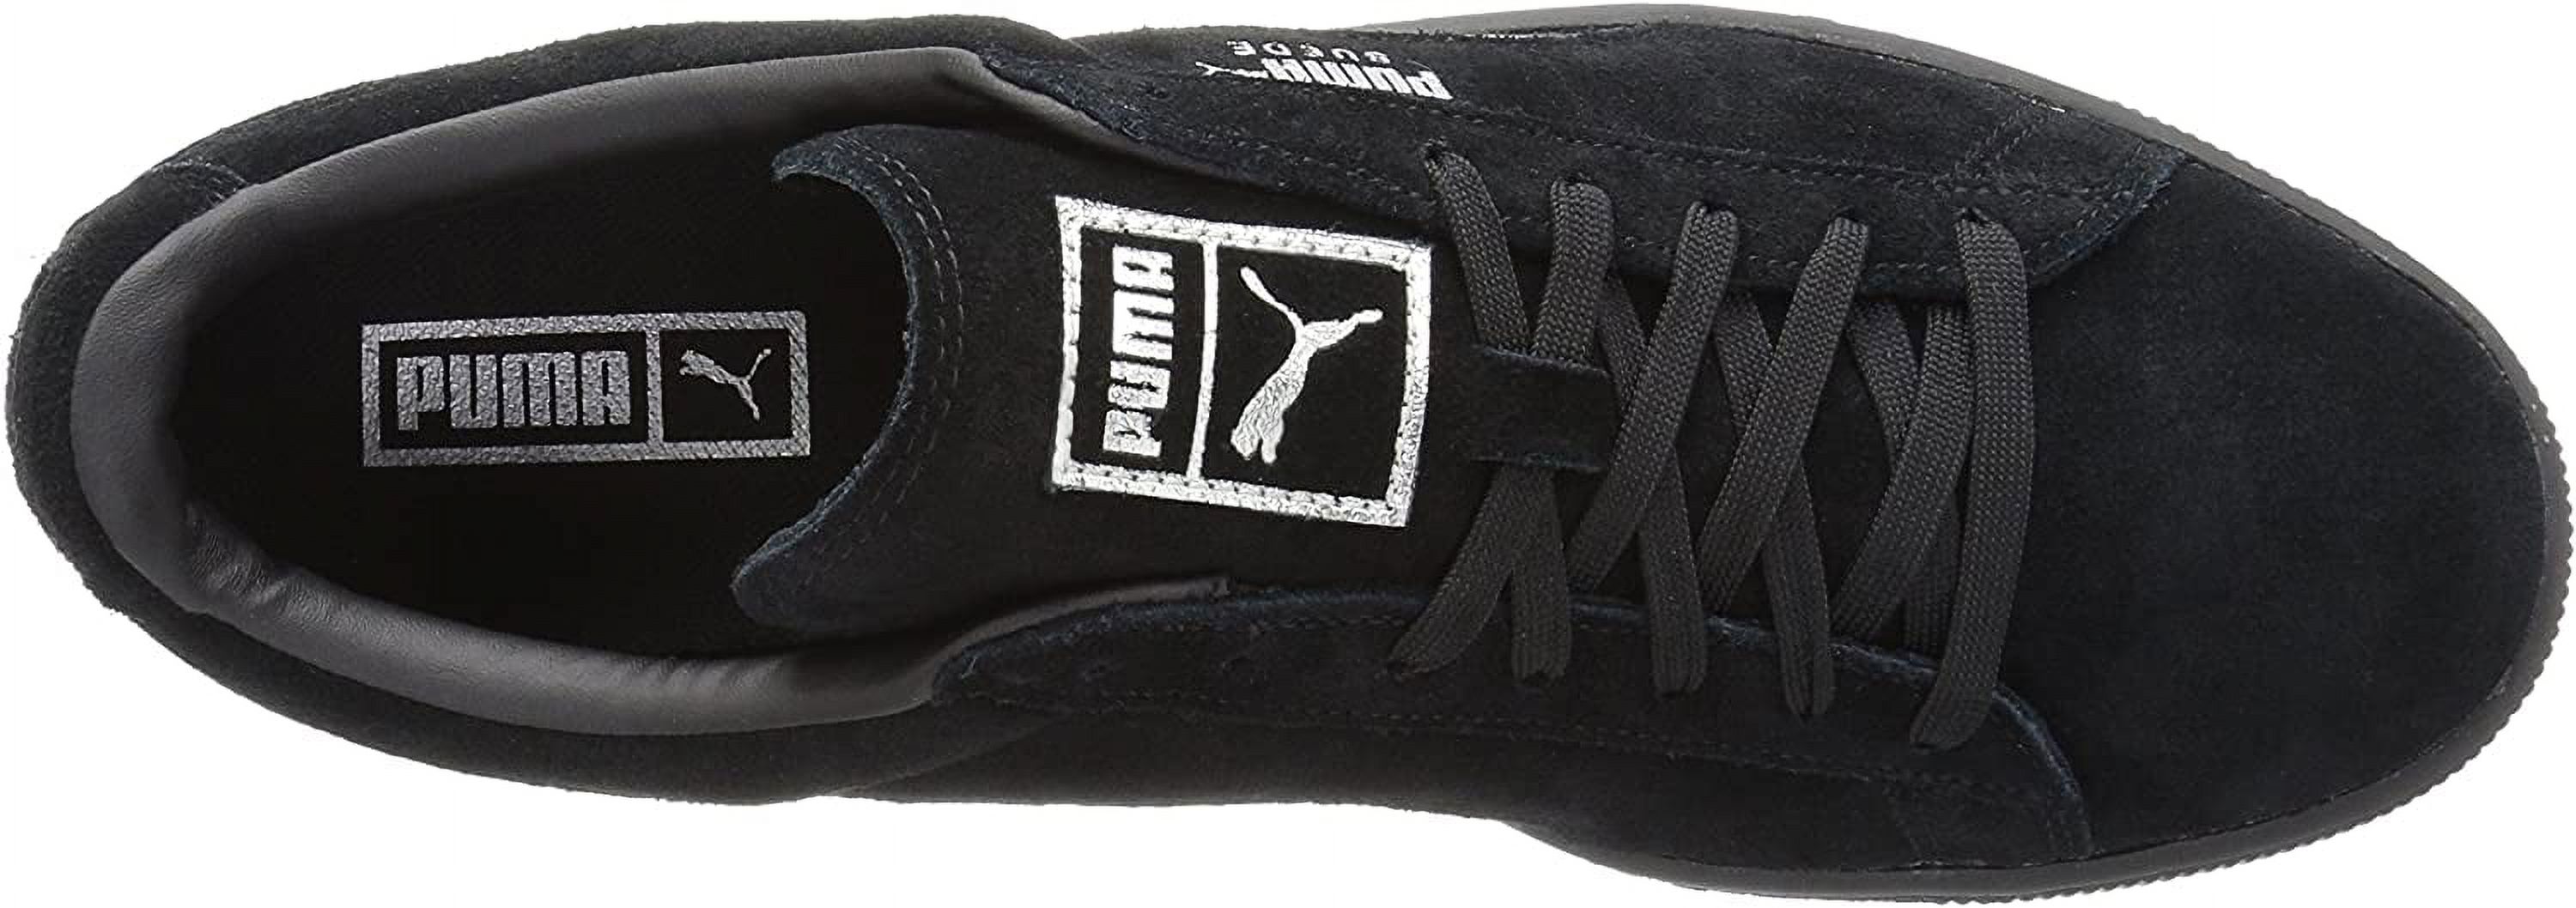 PUMA 363164-06 : Men's Suede Classic Mono Reptile Fashion Sneaker, Black (Puma Black-puma Silv, 8.5 D(M) US) - image 5 of 8